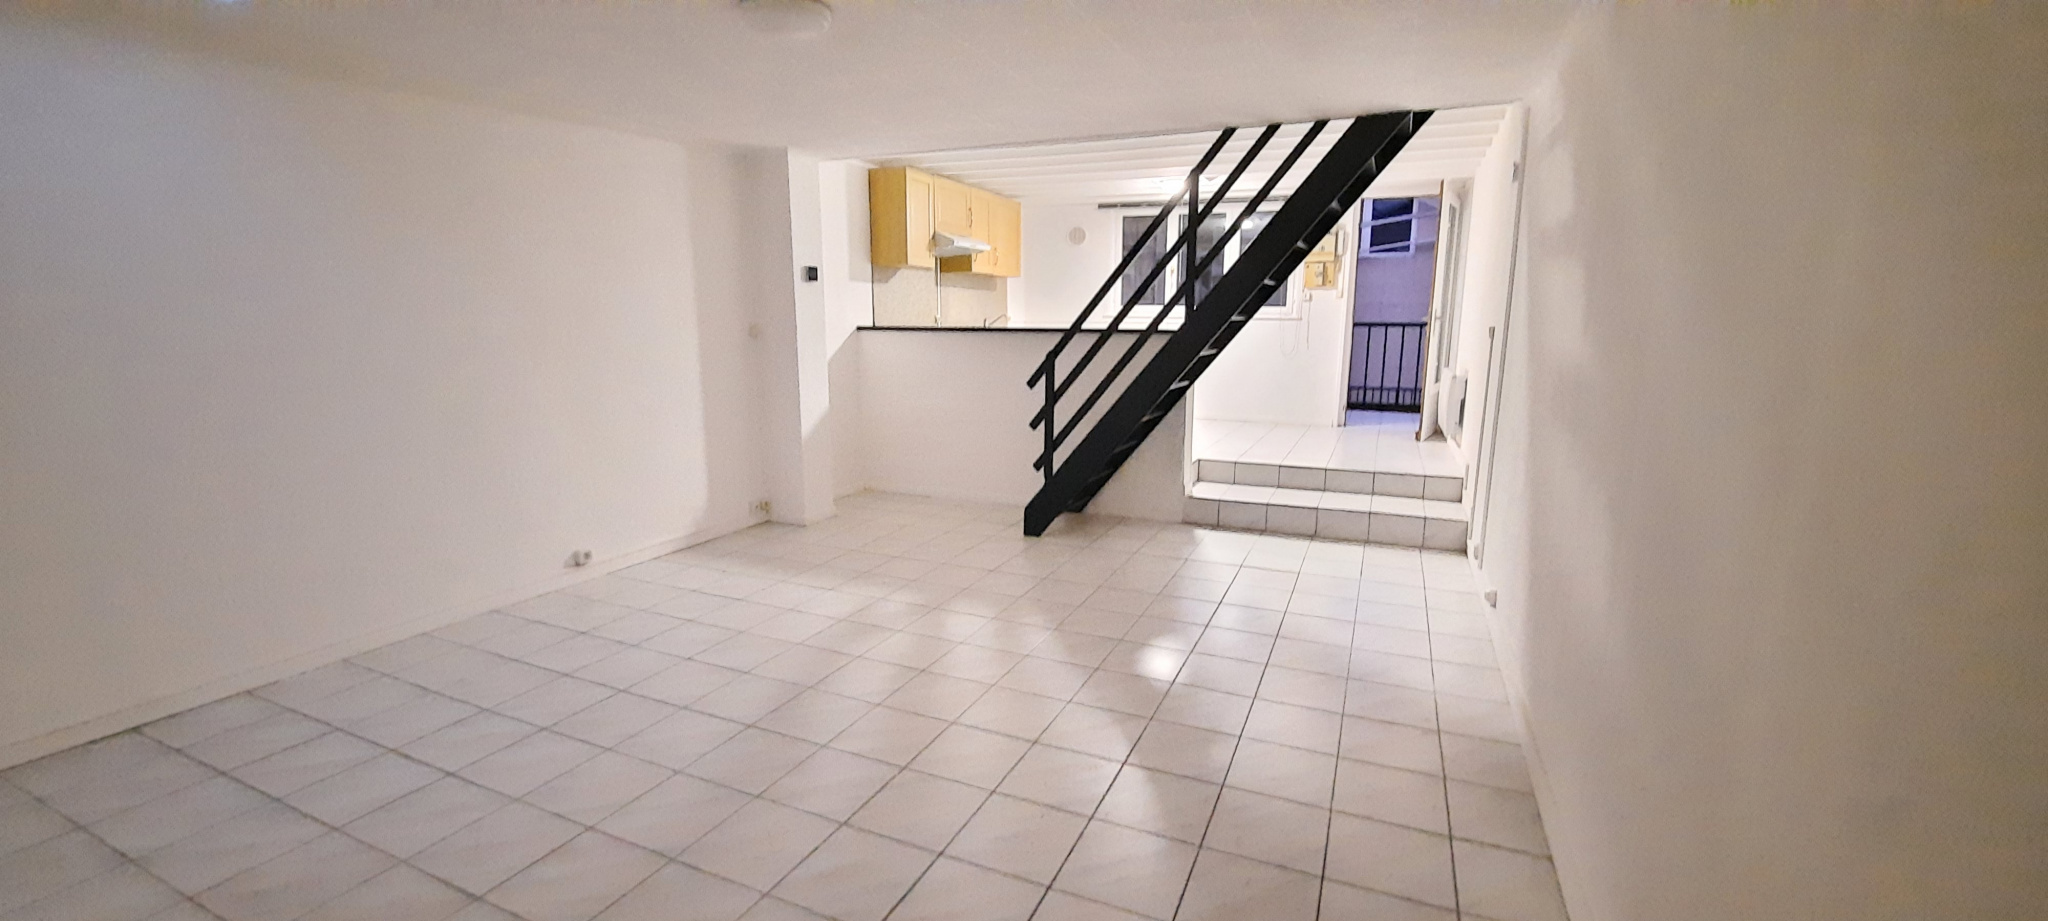 Appartement 3 pièces - 56m² - CAMBRAI